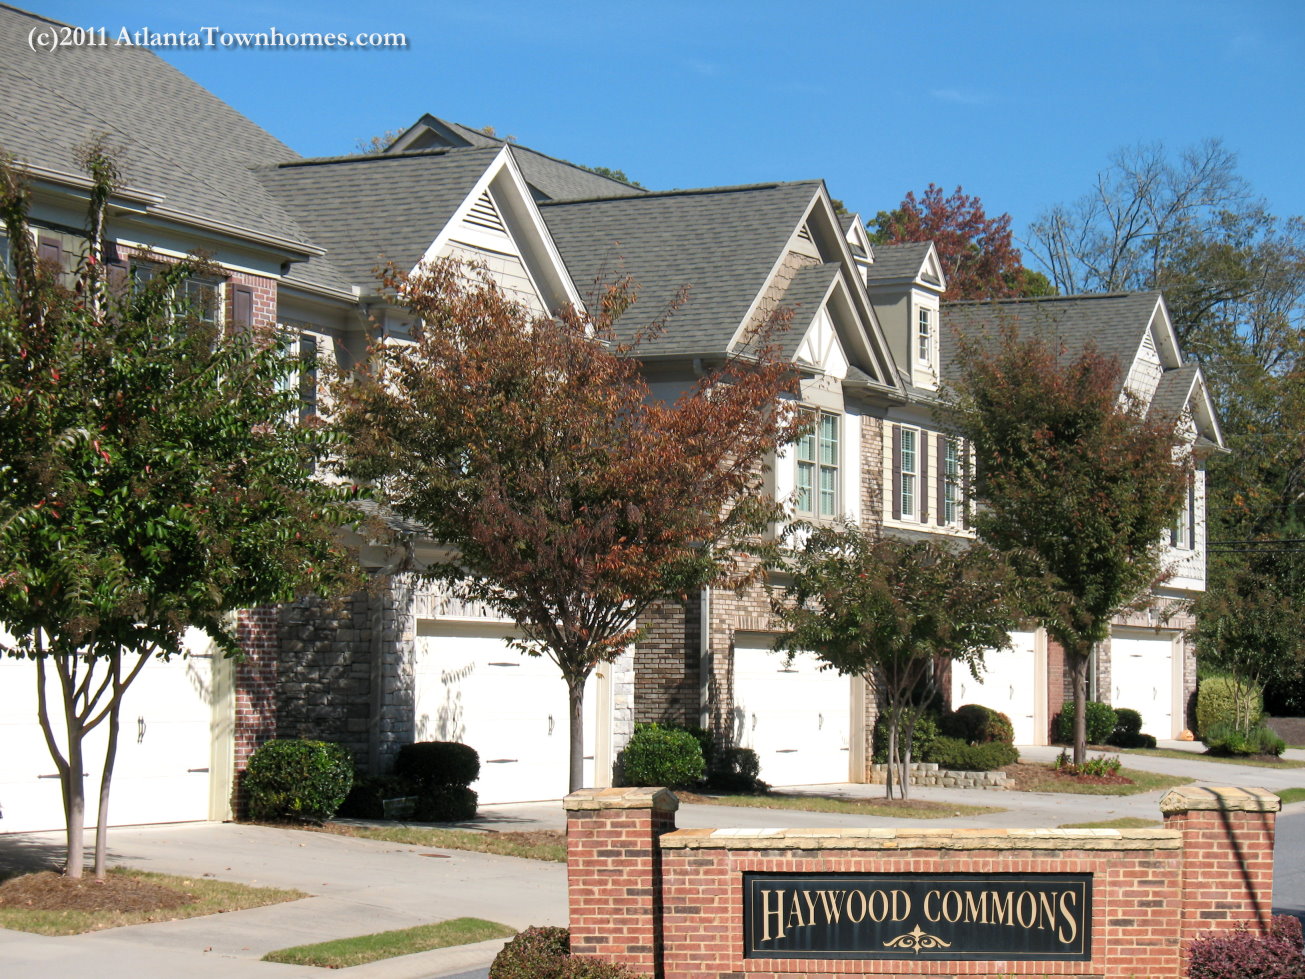 Haywood Commons